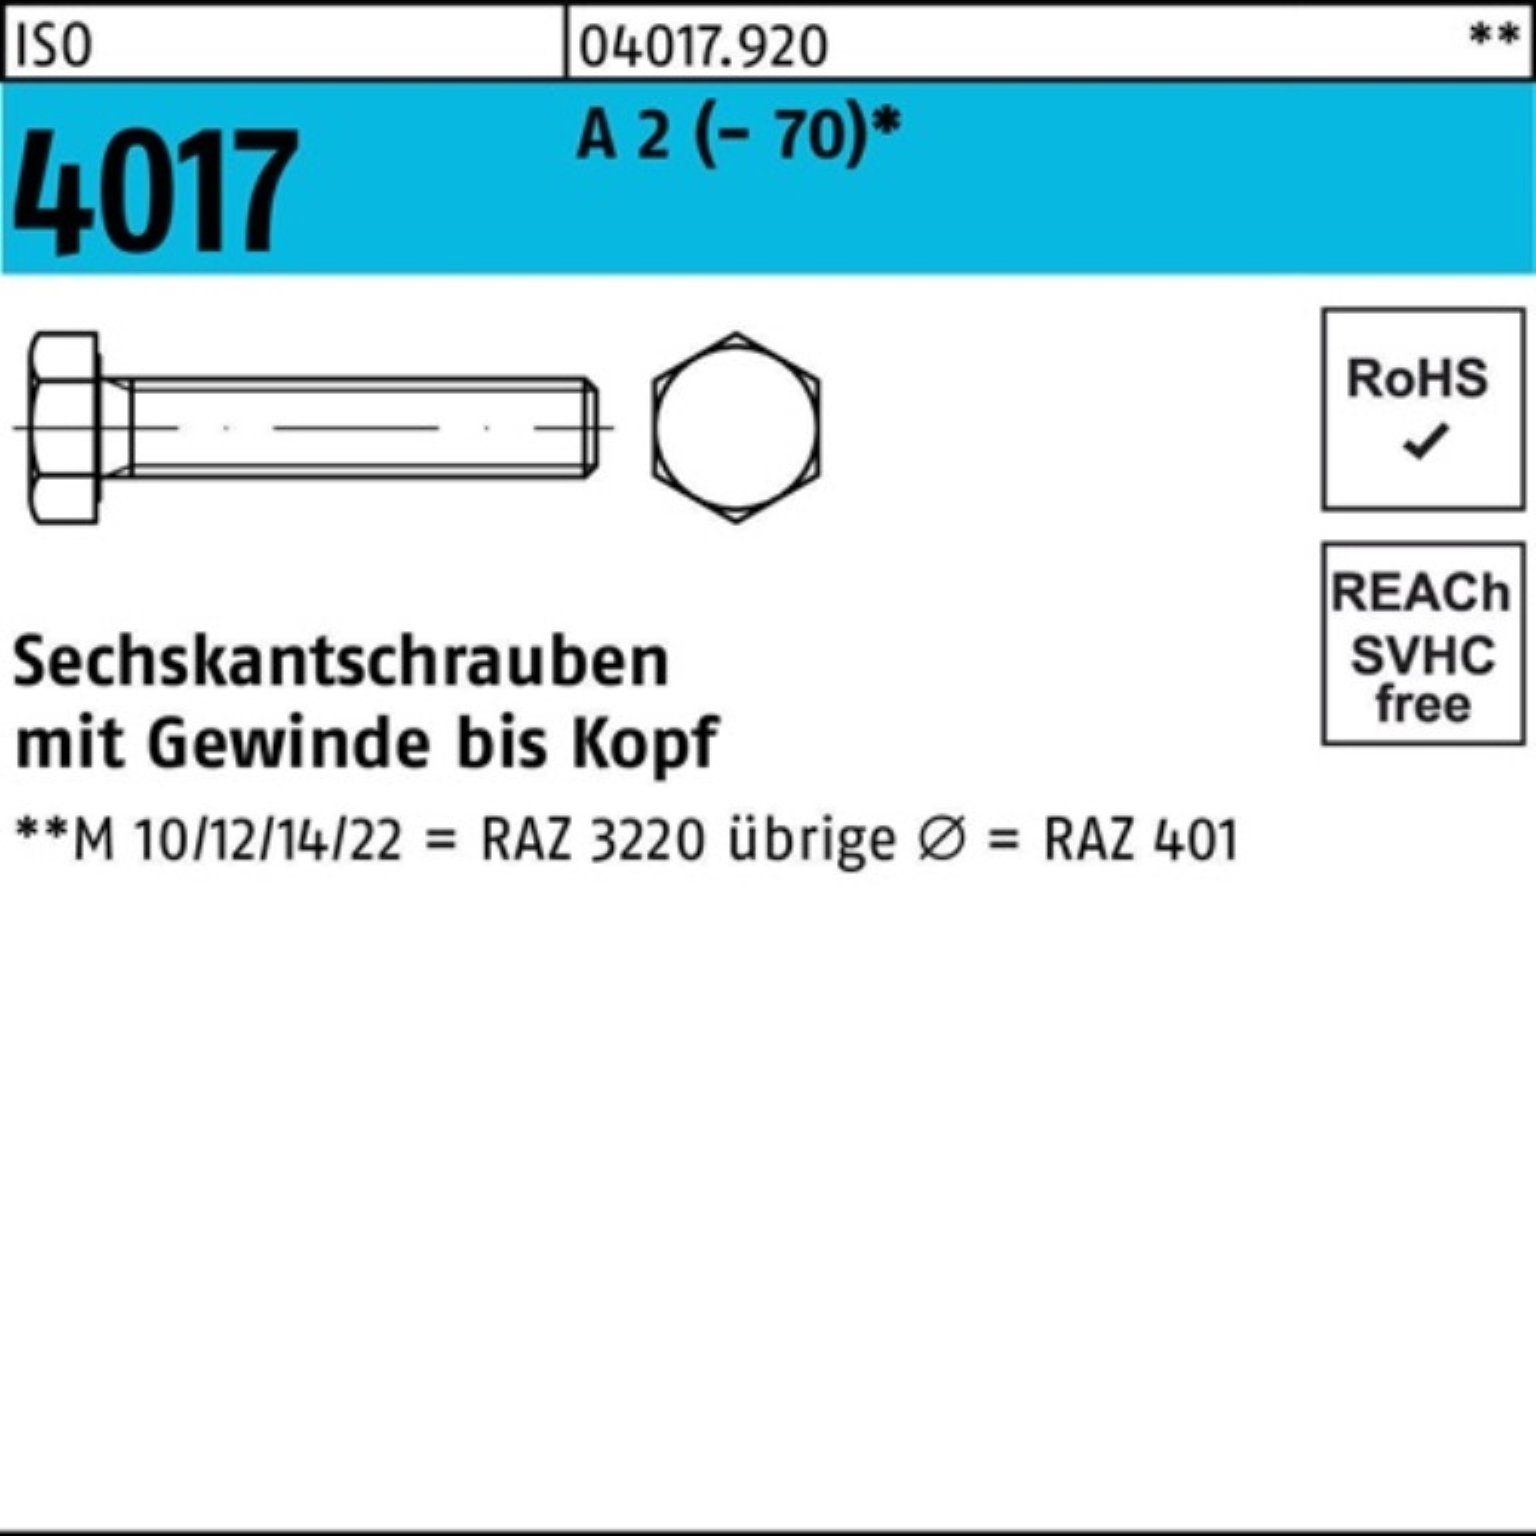 Bufab Sechskantschraube 100er Pack Sechskantschraube ISO 4017 VG M22x 60 A 2 (70) 10 Stück